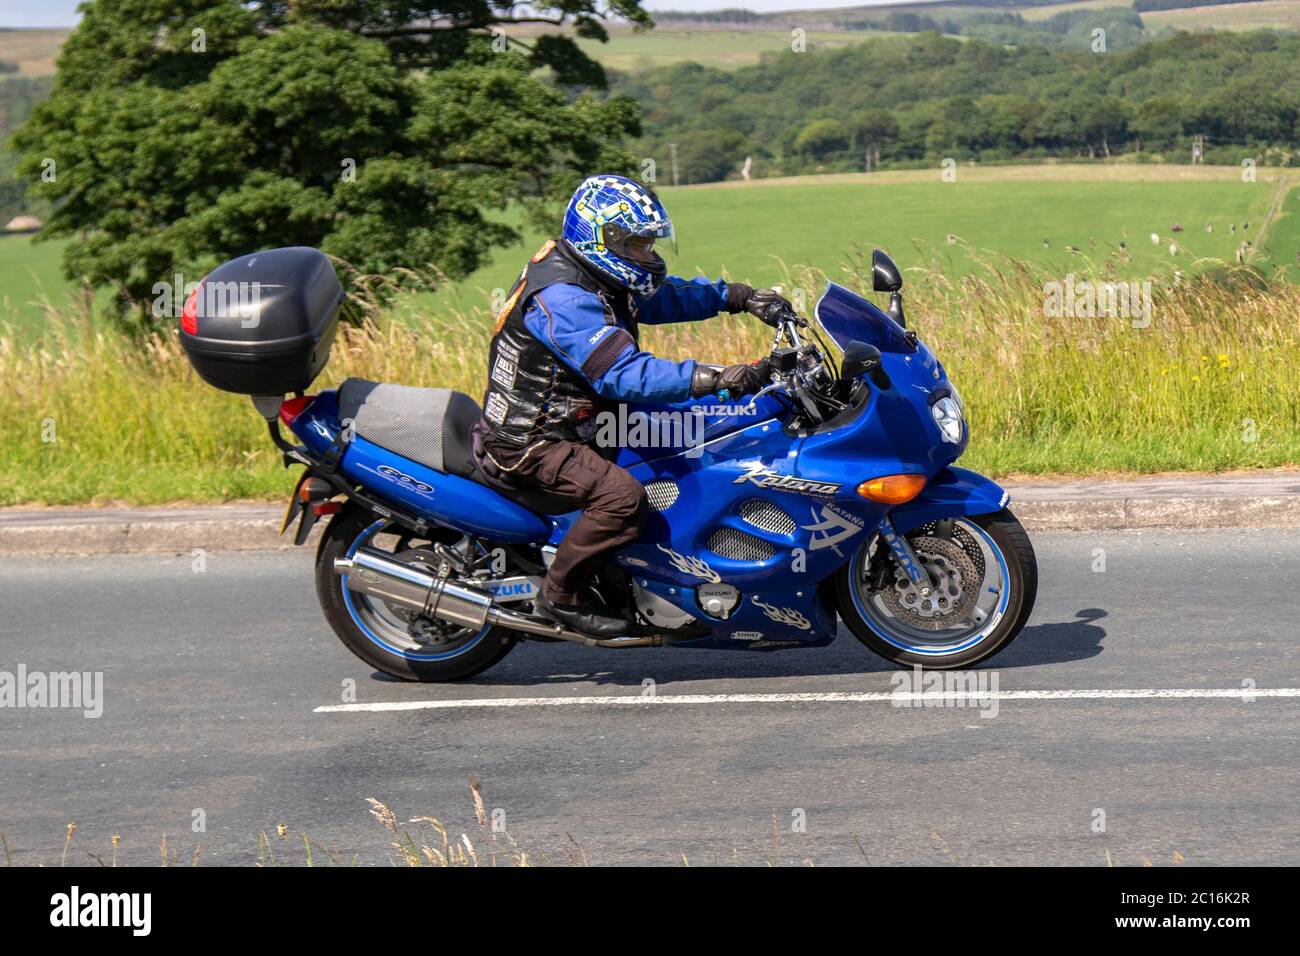 1998 90s n90 blu Suzuki Katana 600 aerodinamica Super Sprint; motociclista; trasporto a due ruote, moto, veicolo, Strade, motociclette, motociclisti, motociclisti che guidano l'auto sull'autostrada M6 Chorley, Regno Unito Foto Stock